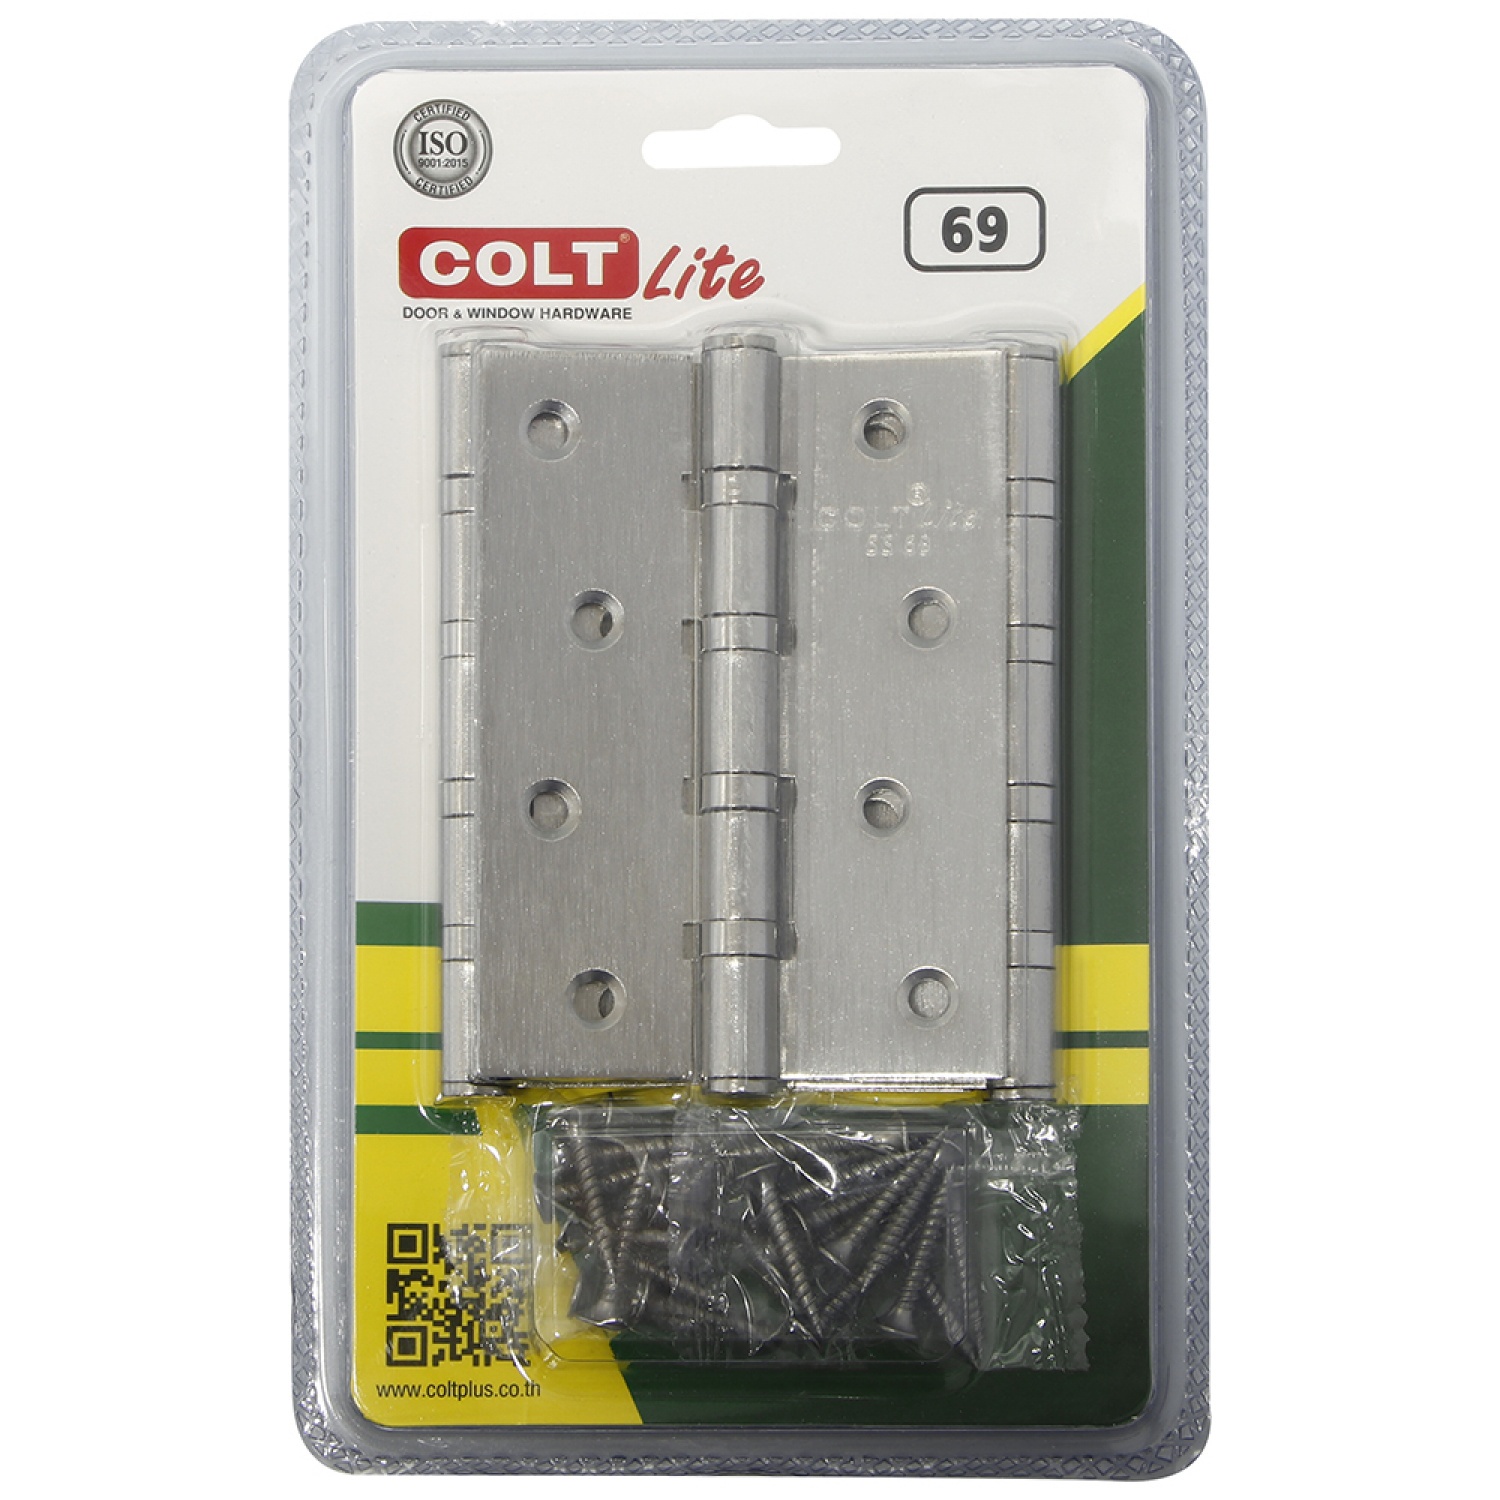 COLT LITE บานพับประตูสเตนเลส รุ่น 69 ขนาด 4 x 3 นิ้ว x 2 มม. (แพ็ก 3 ชิ้น) สีสแตนเลส( 1 แถม 1)